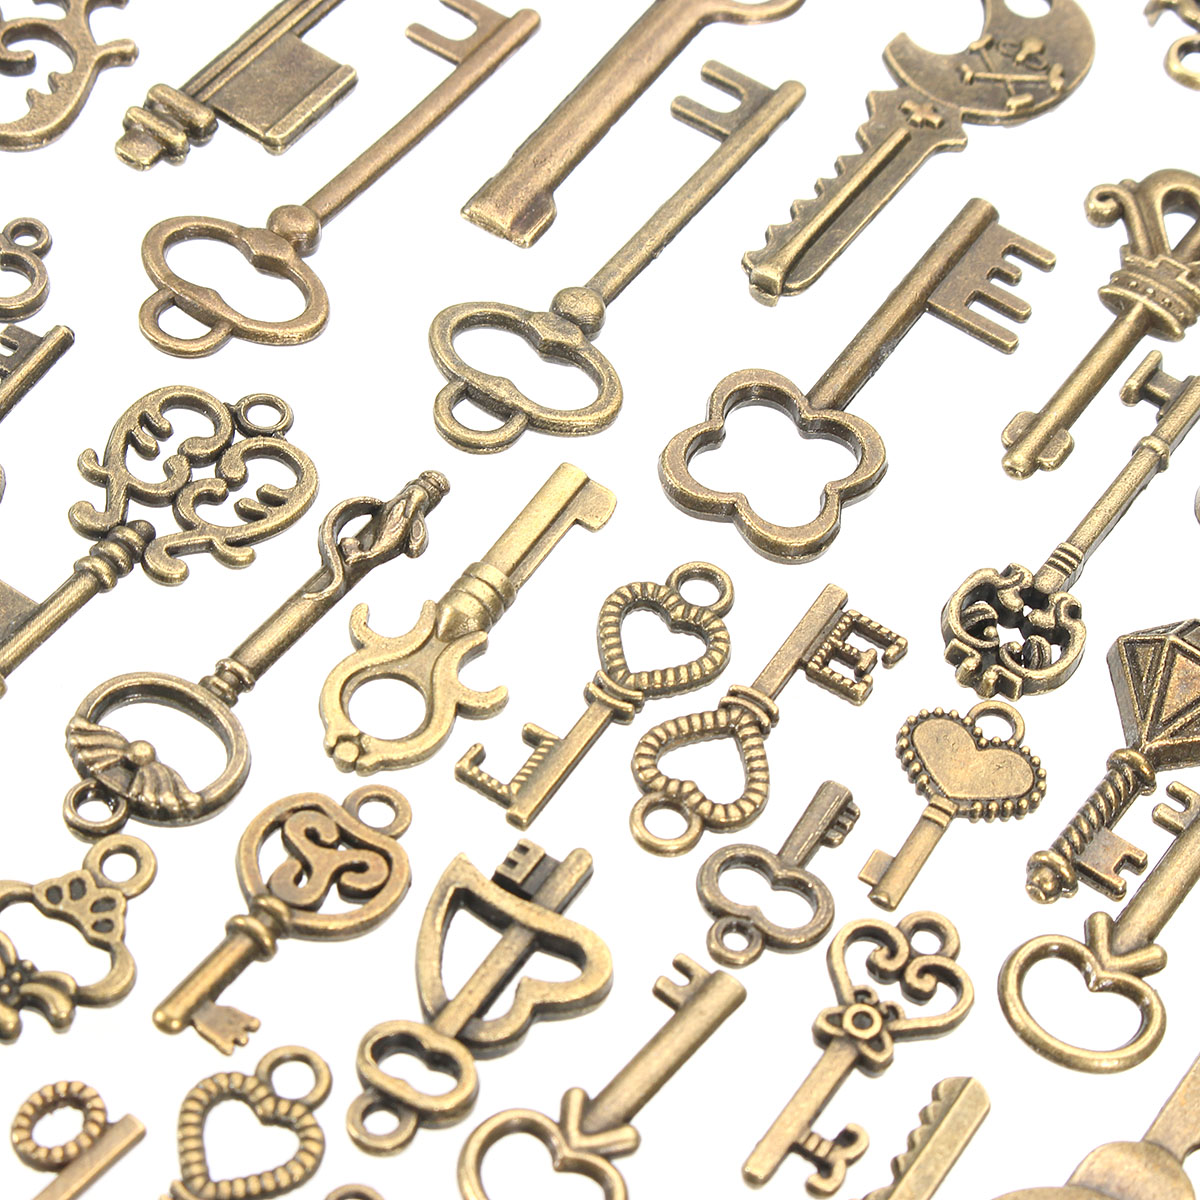 125Pcs-Vintage-Bronze-Key-For-Pendant-Necklace-Bracelet-DIY-Handmade-Accessories-Decoration-1192644-2